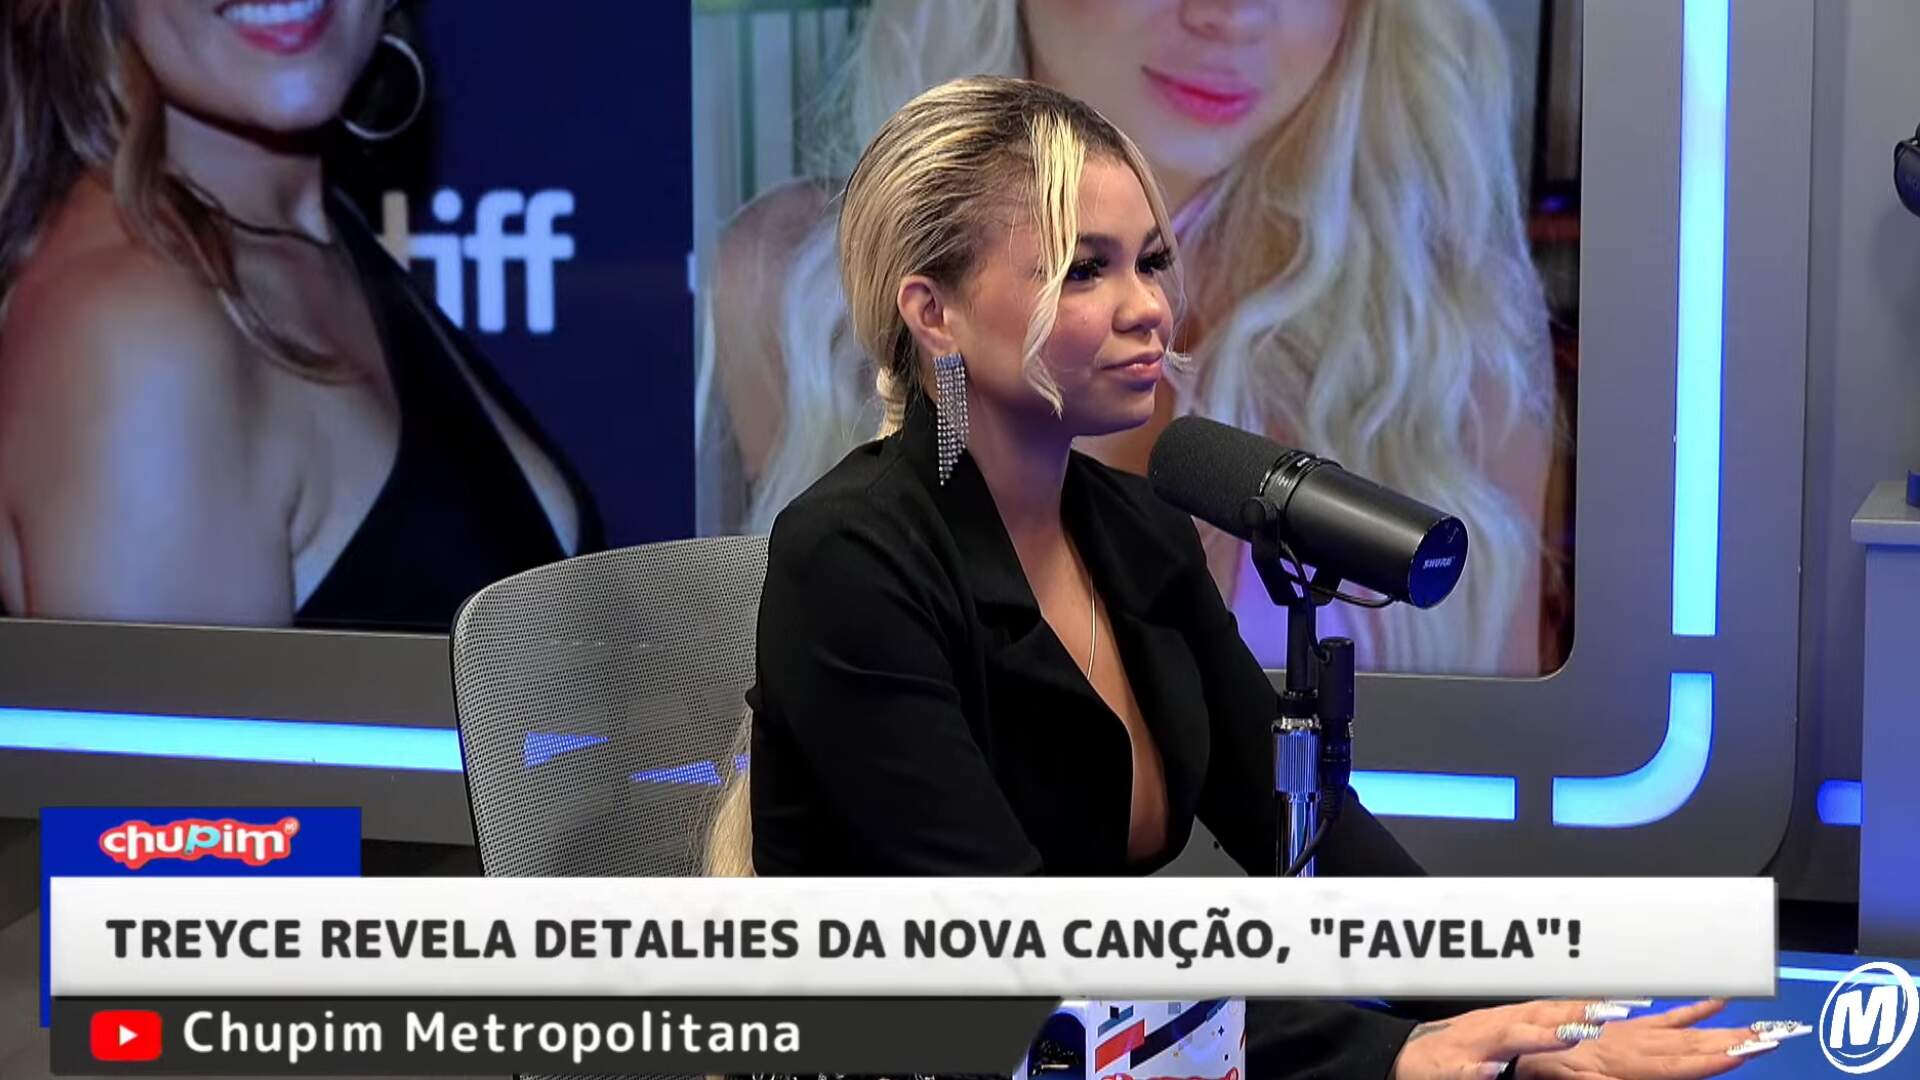 Sucesso atrás de Sucesso! Treyce revela detalhes da nova canção ‘Favela’ - Metropolitana FM